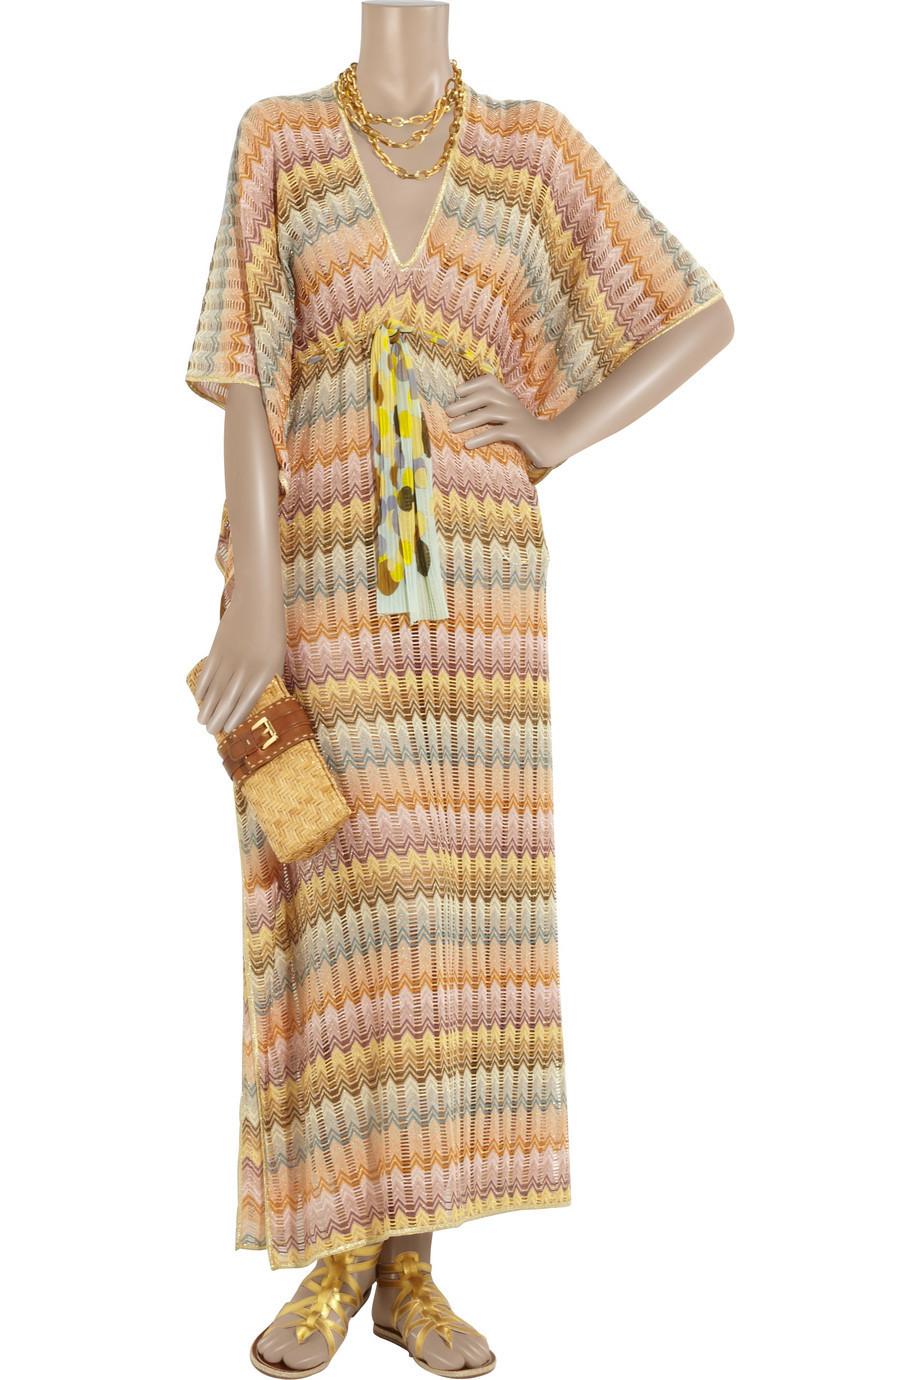 NEW Missoni Gold Metallic Crochet Maxi Knit Kaftan Tunic Dress L For Sale 3